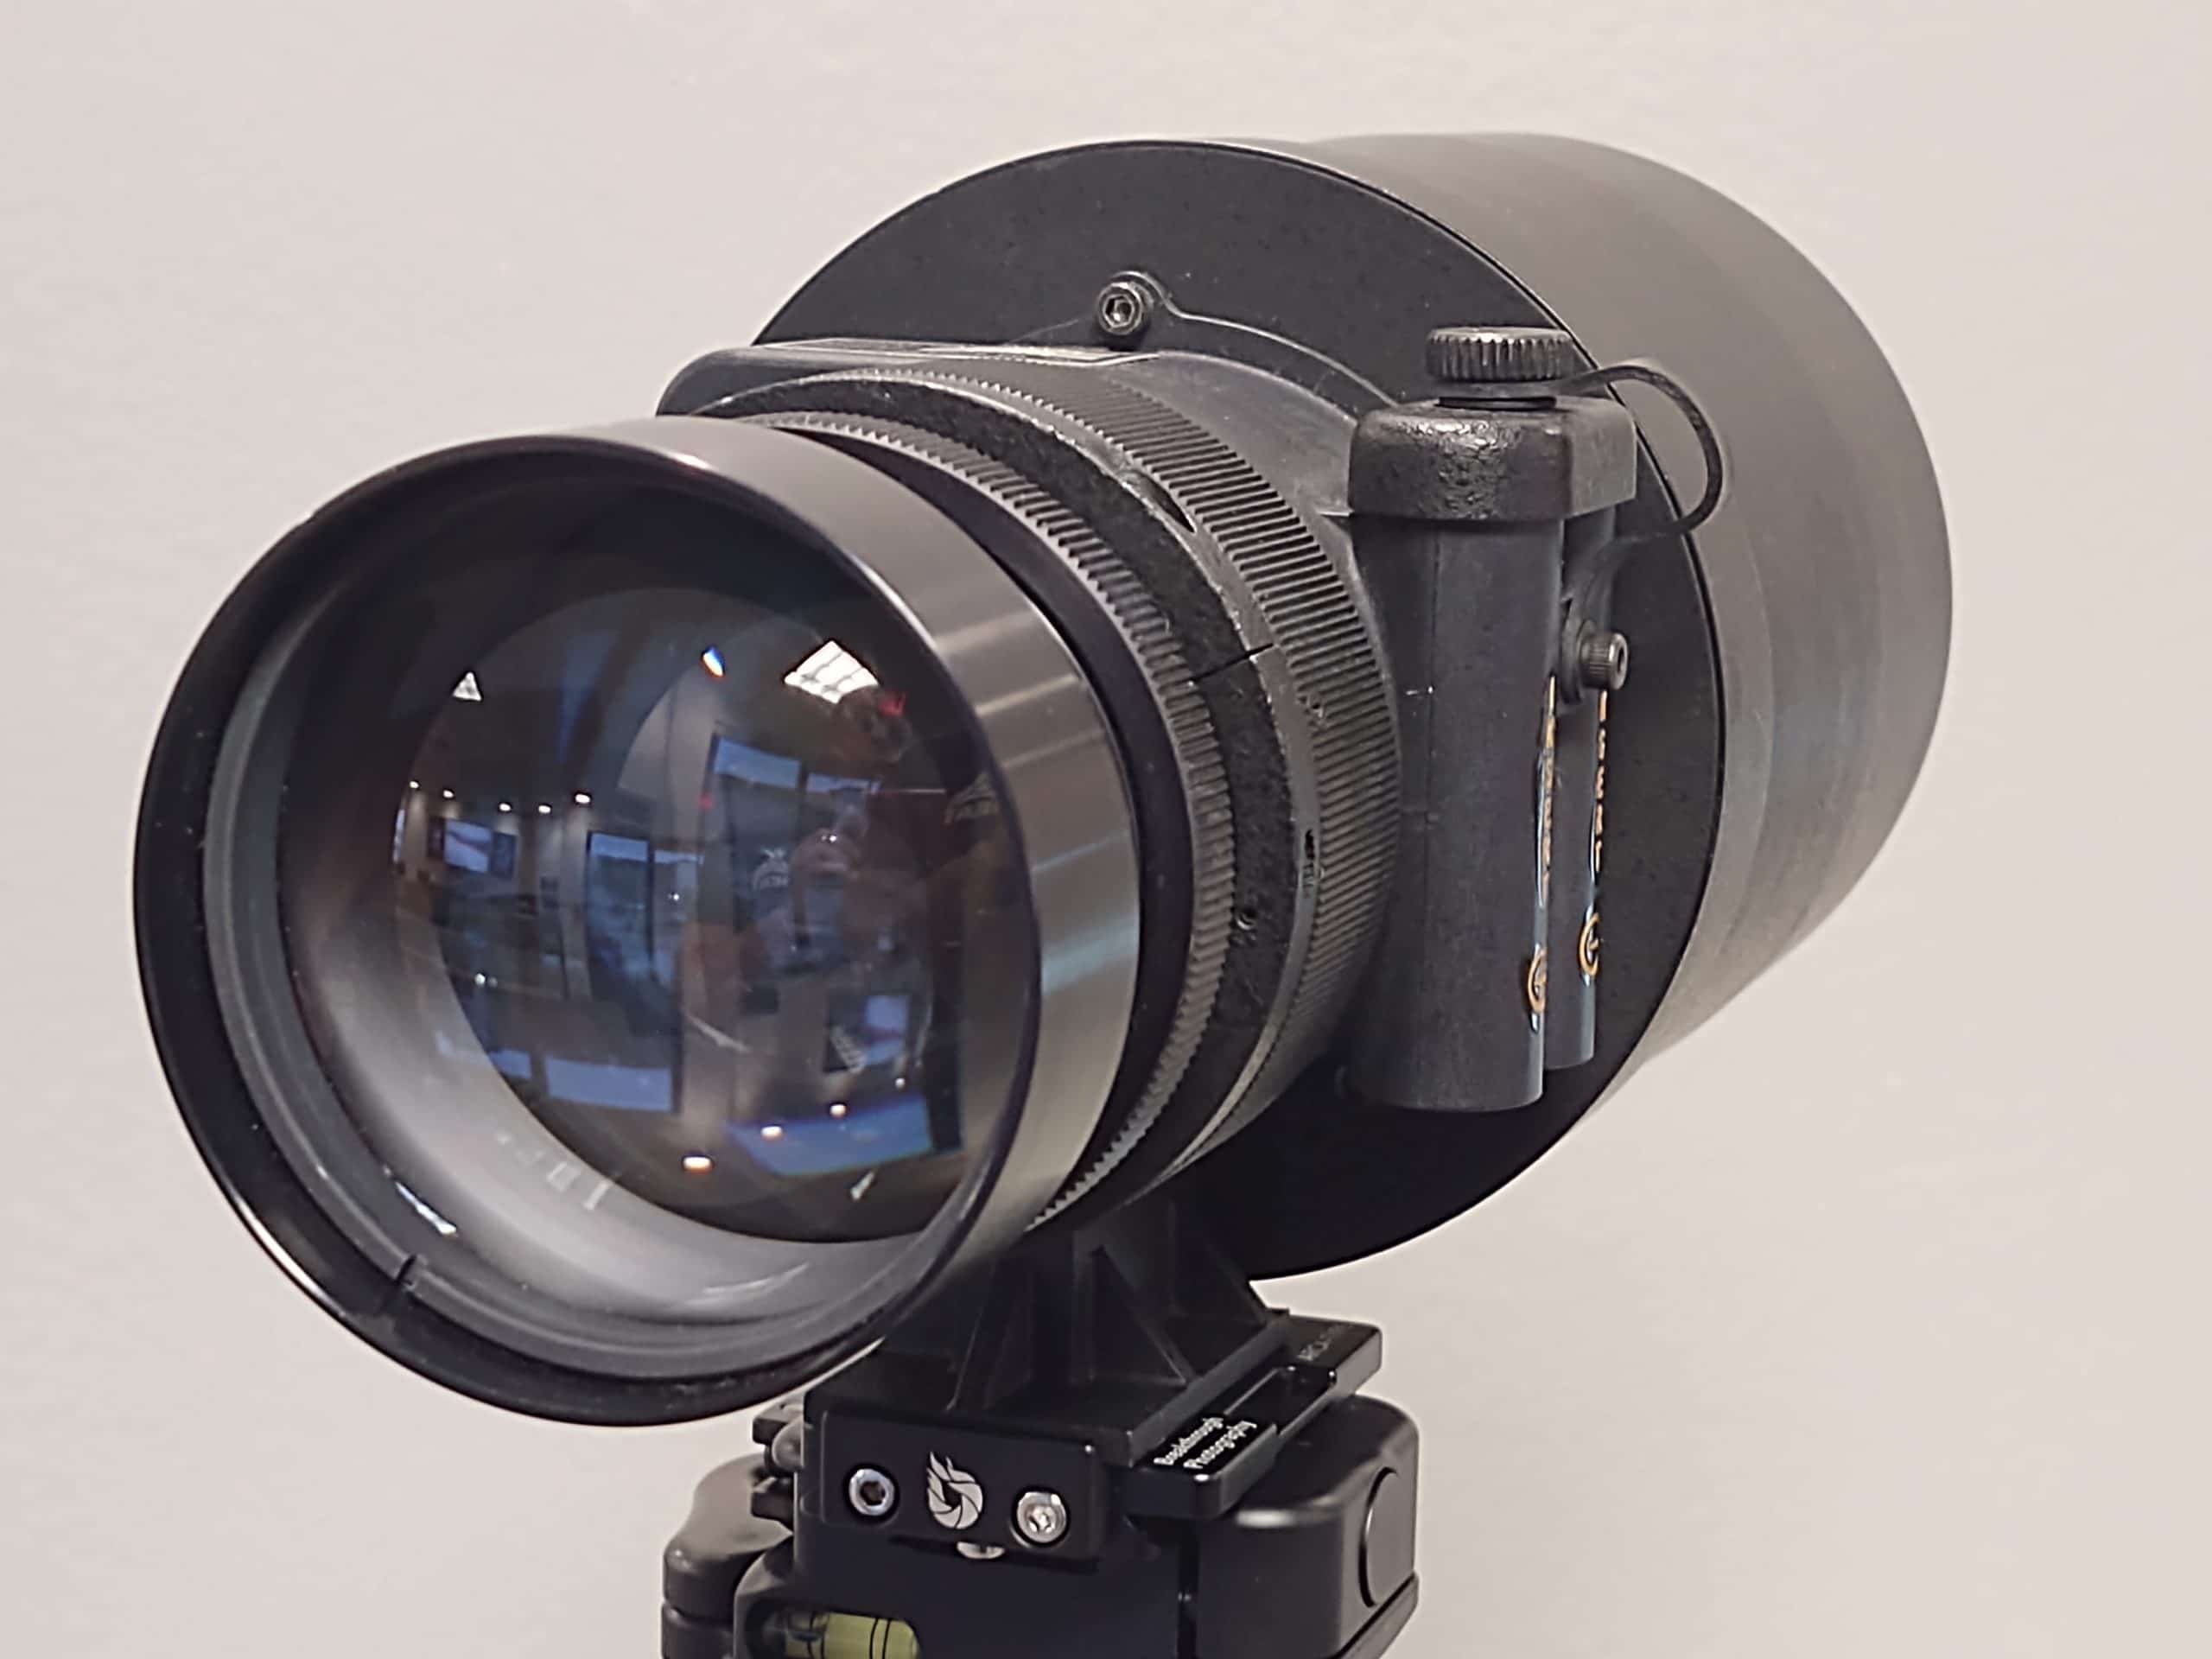 Star-Tron MK428/LR170 Lens (PVS 400HP) Gen III